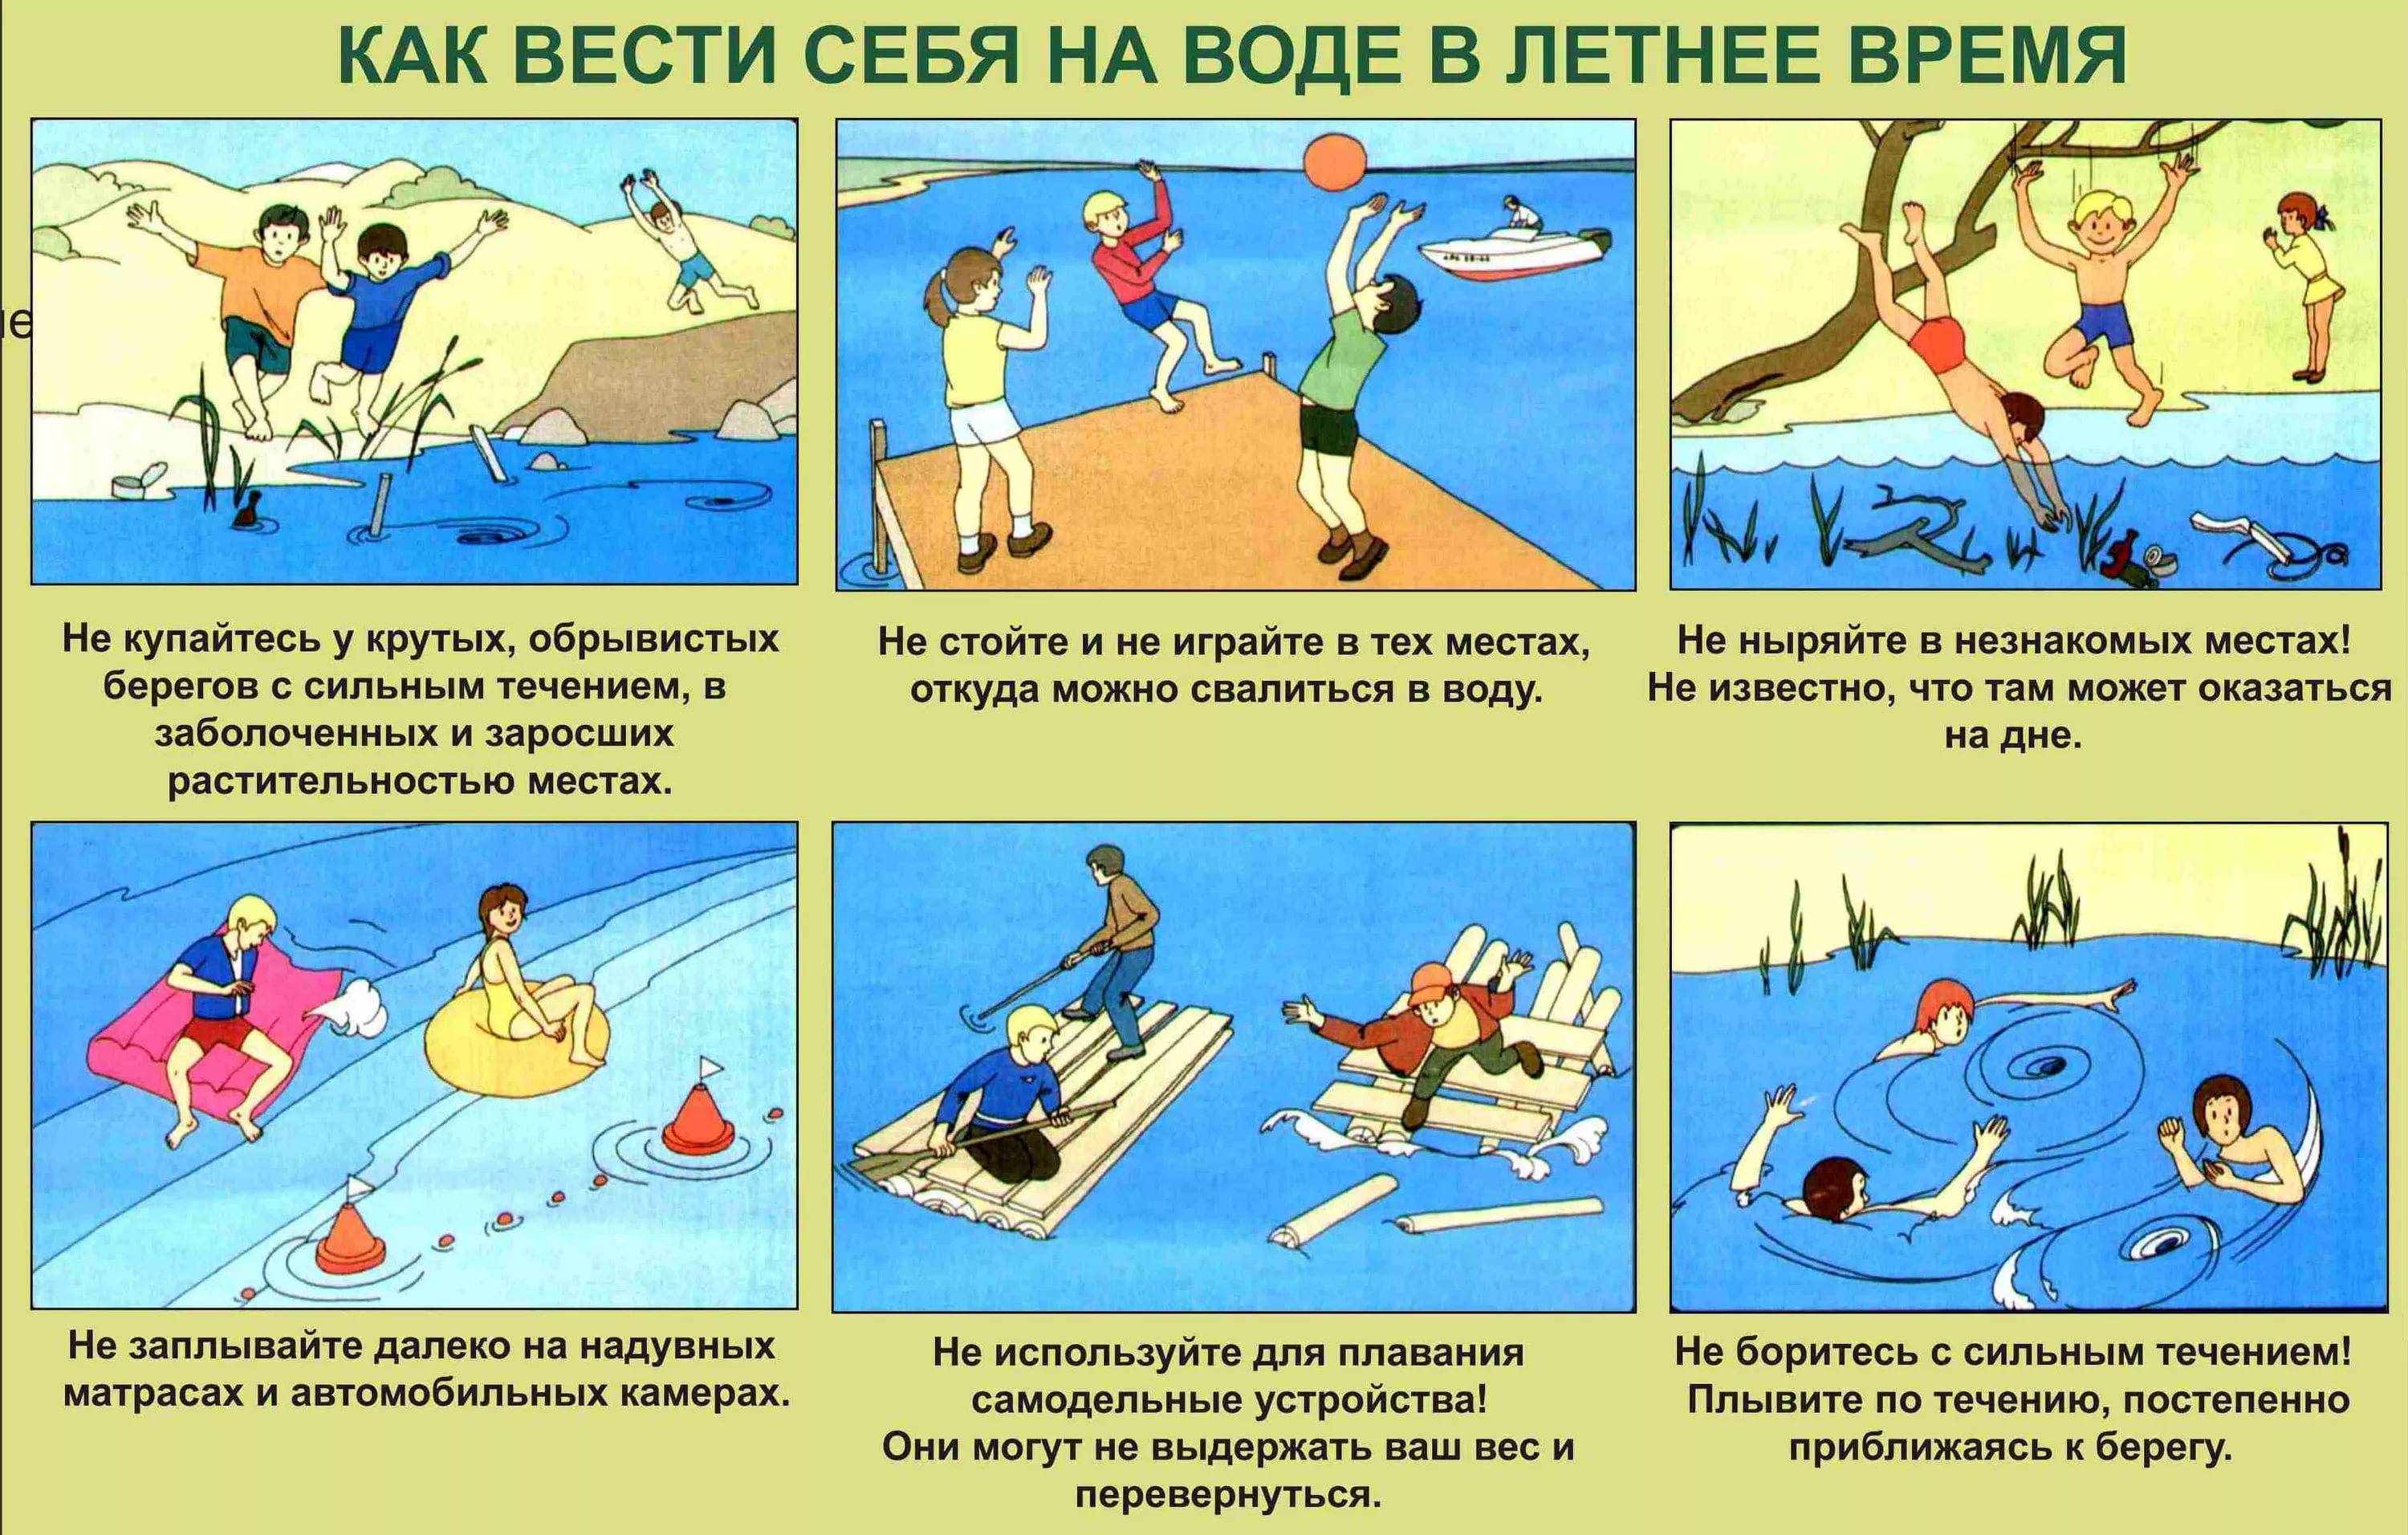 Правила безопасности на водных объектах - памятки по безопасному поведению на воде - главное управление мчс россии по тамбовской области